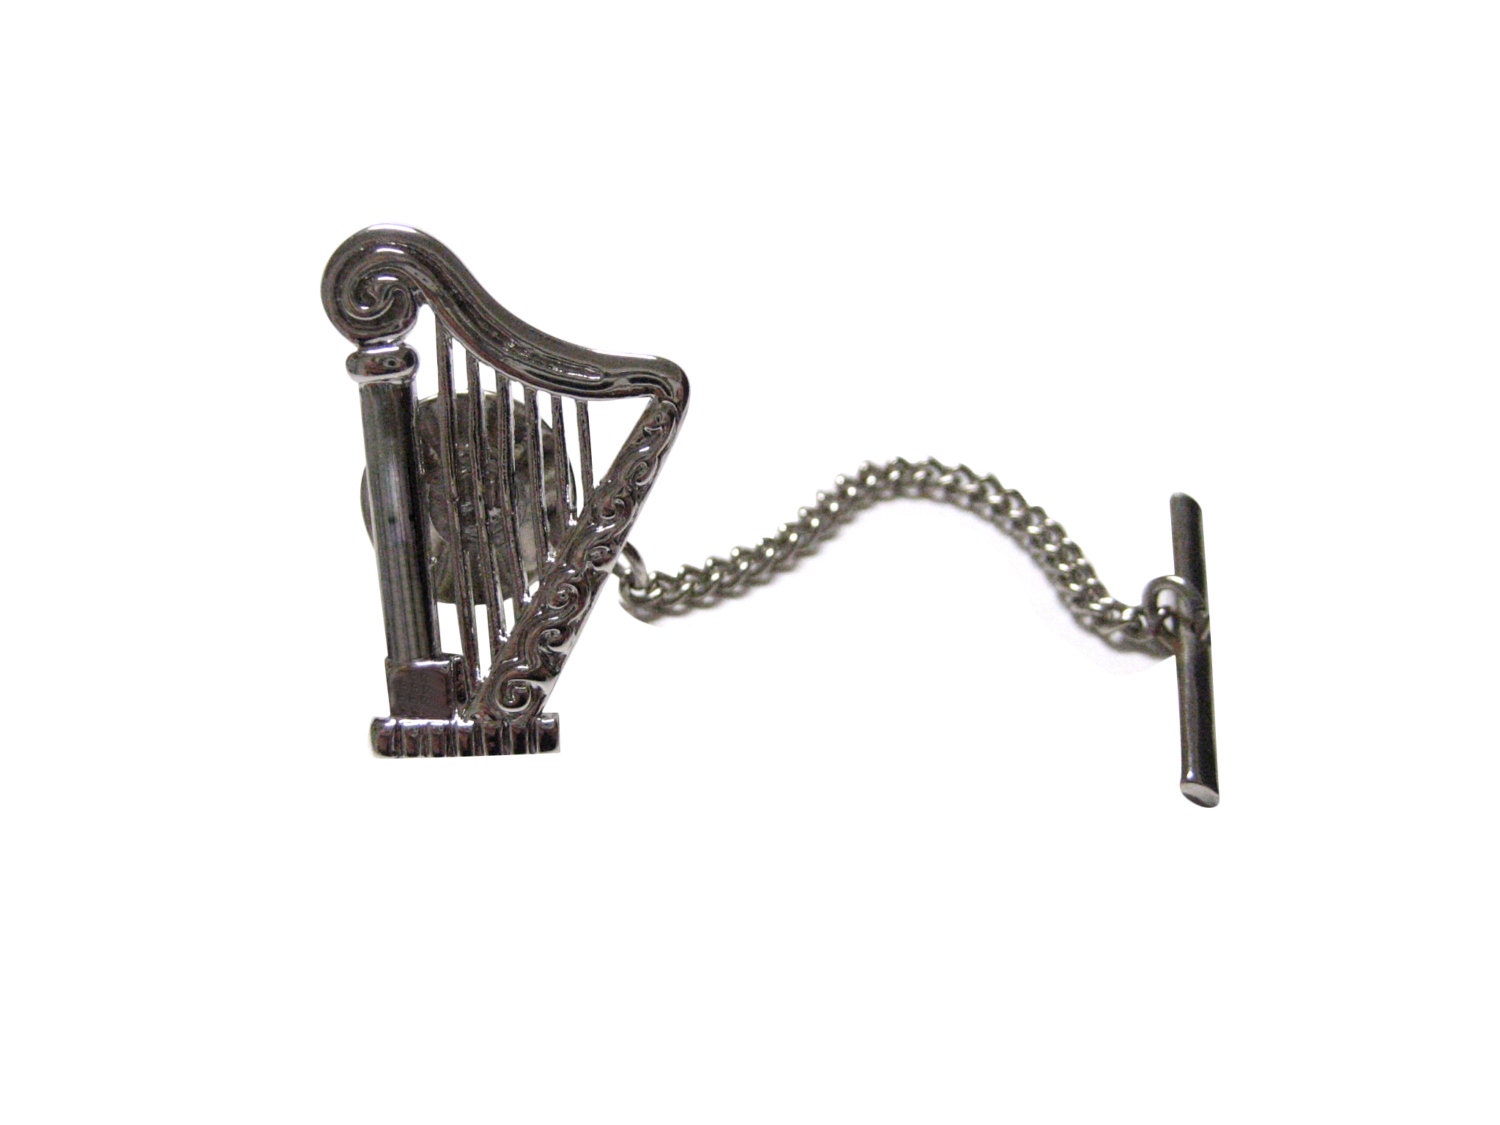 Musicmakers: Decorative tacks for door harp